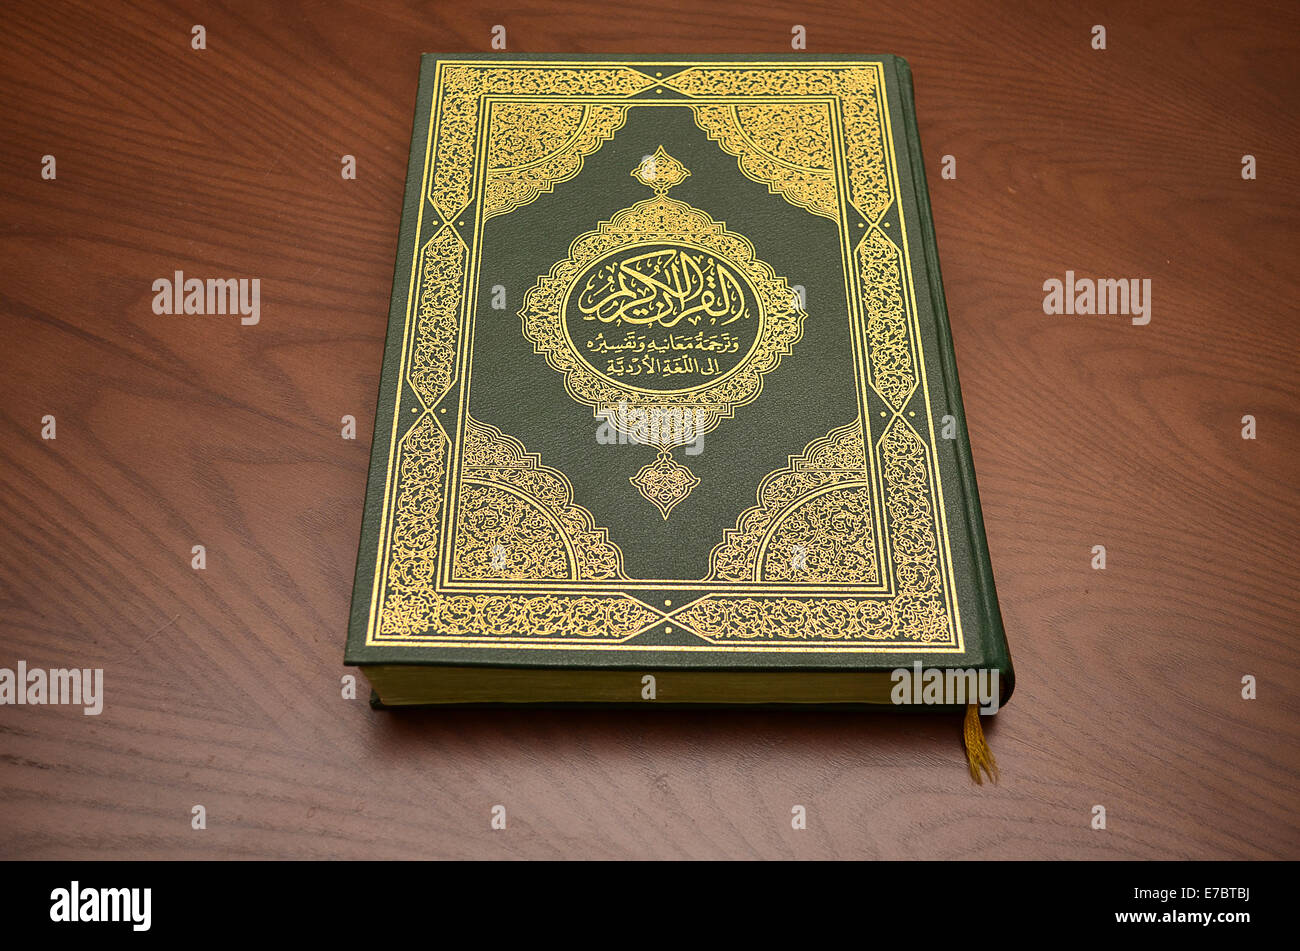 Libro sagrado del ISLAM y sus características